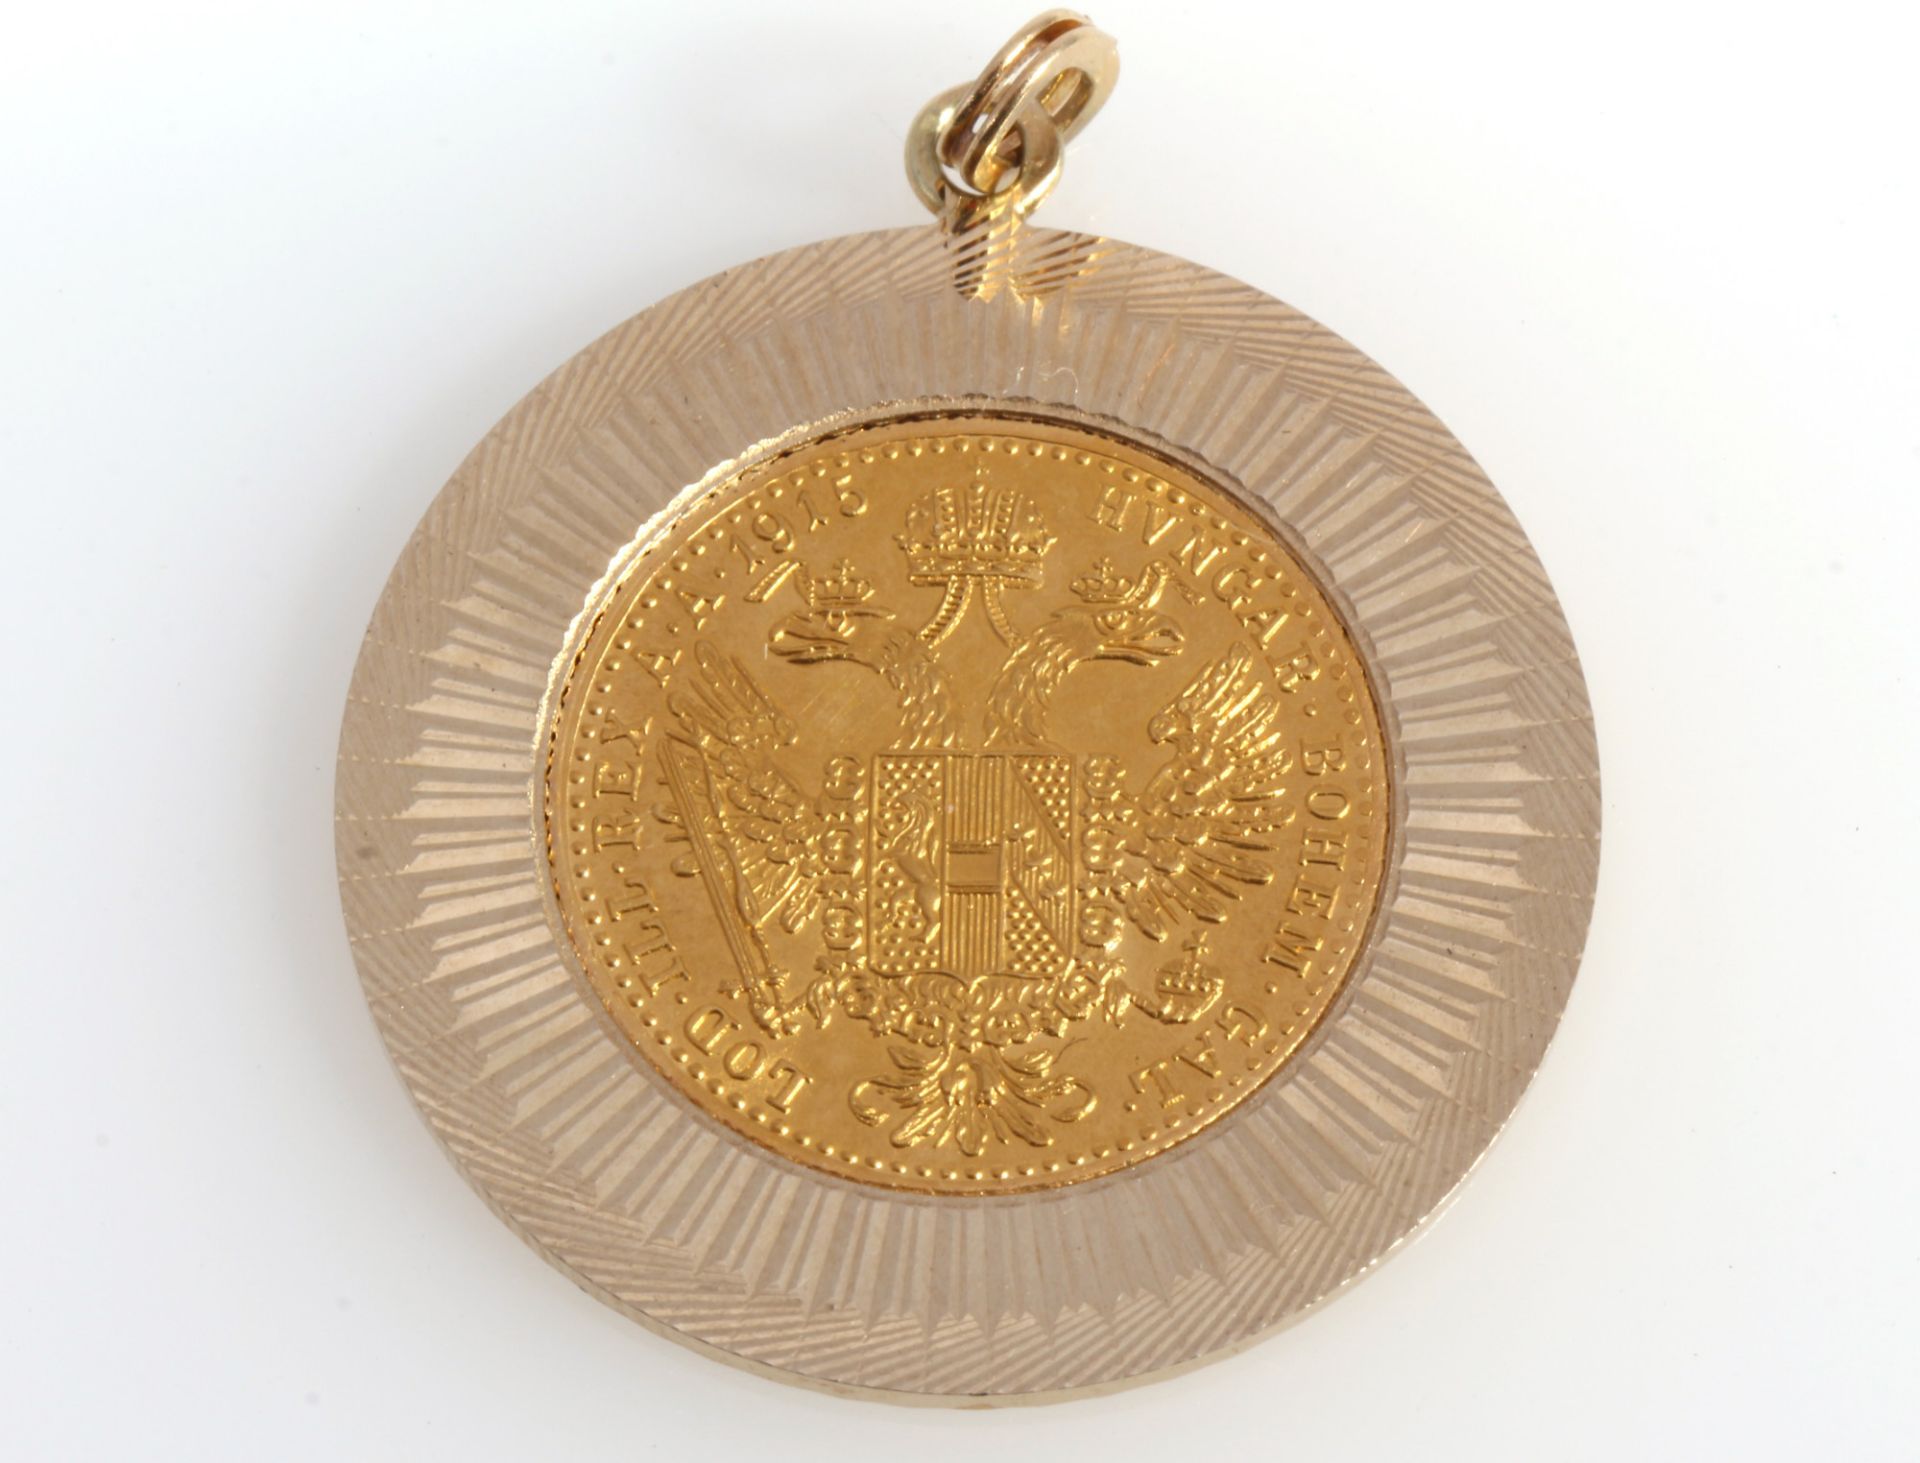 Gold coin 1 ducat Austria Emperor Franz Joseph 1915, Goldmünze 1 Dukat Österreich Kaiser Franz Josep - Image 2 of 2